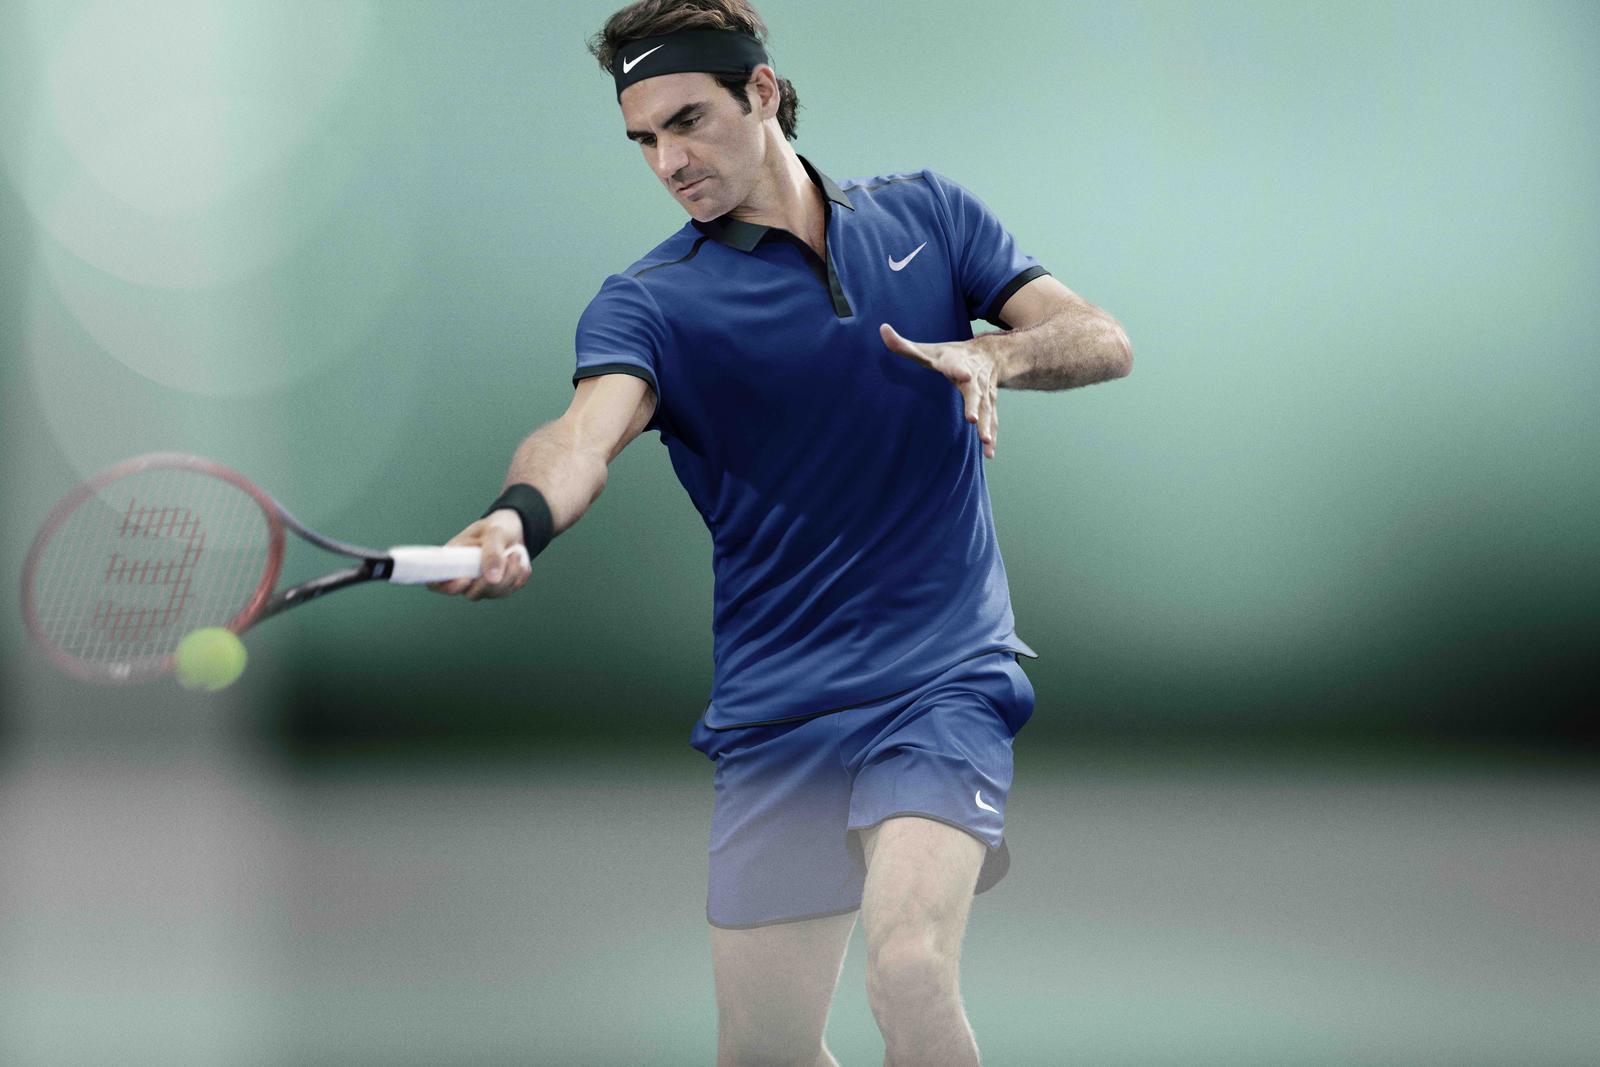 NikeCourt_Roger_Federer_1_native_1600.jpg